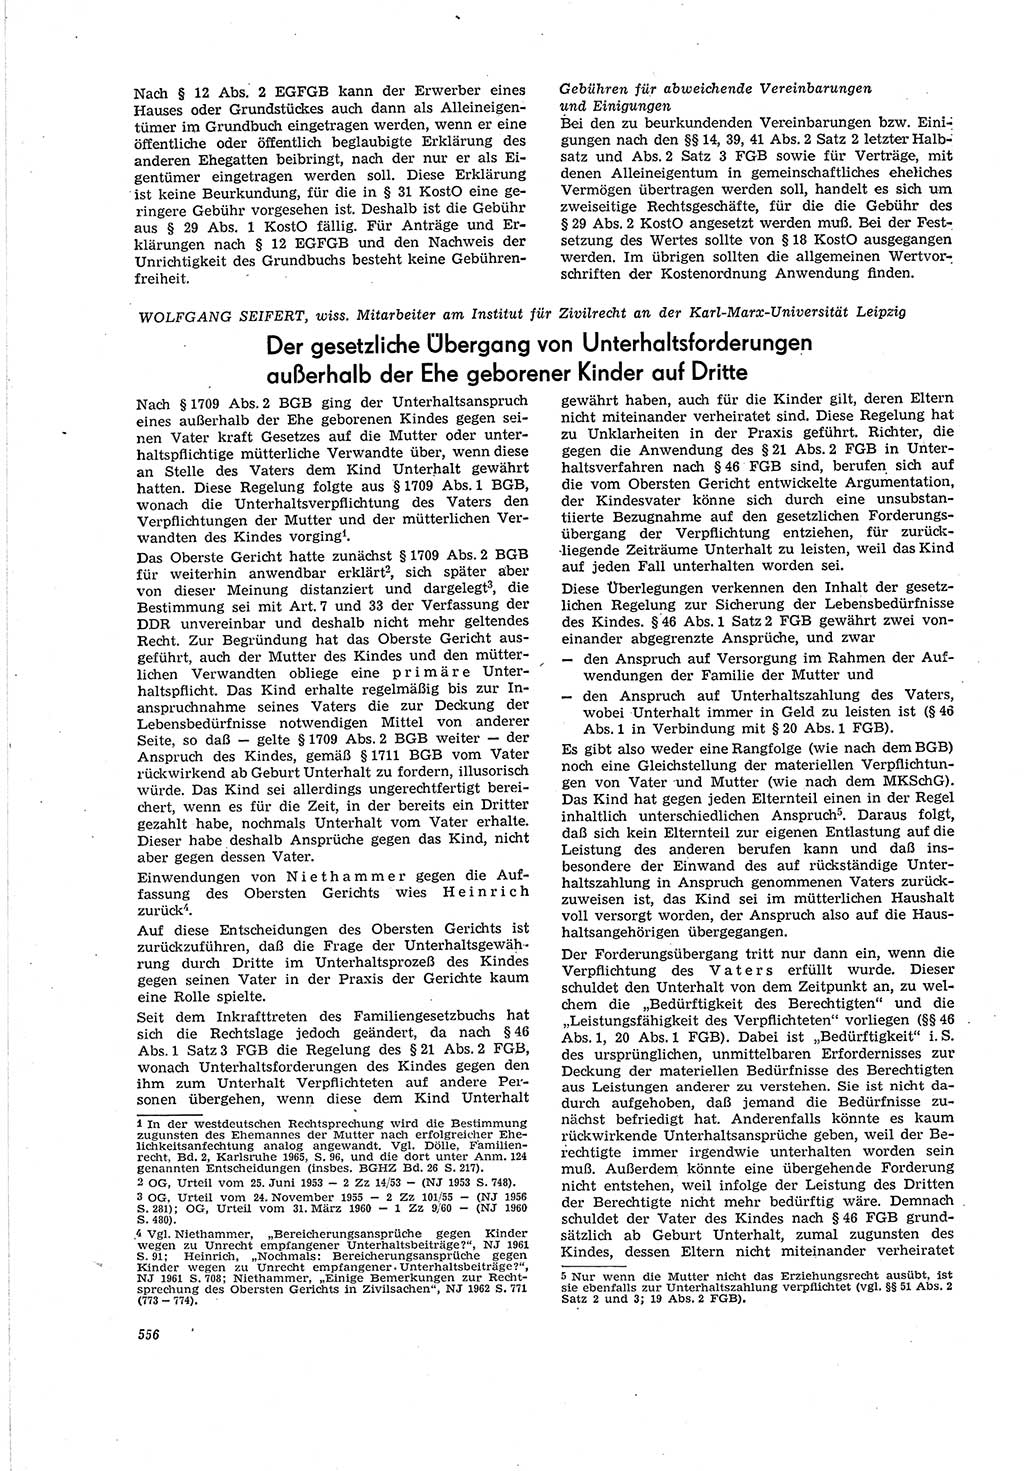 Neue Justiz (NJ), Zeitschrift für Recht und Rechtswissenschaft [Deutsche Demokratische Republik (DDR)], 20. Jahrgang 1966, Seite 556 (NJ DDR 1966, S. 556)